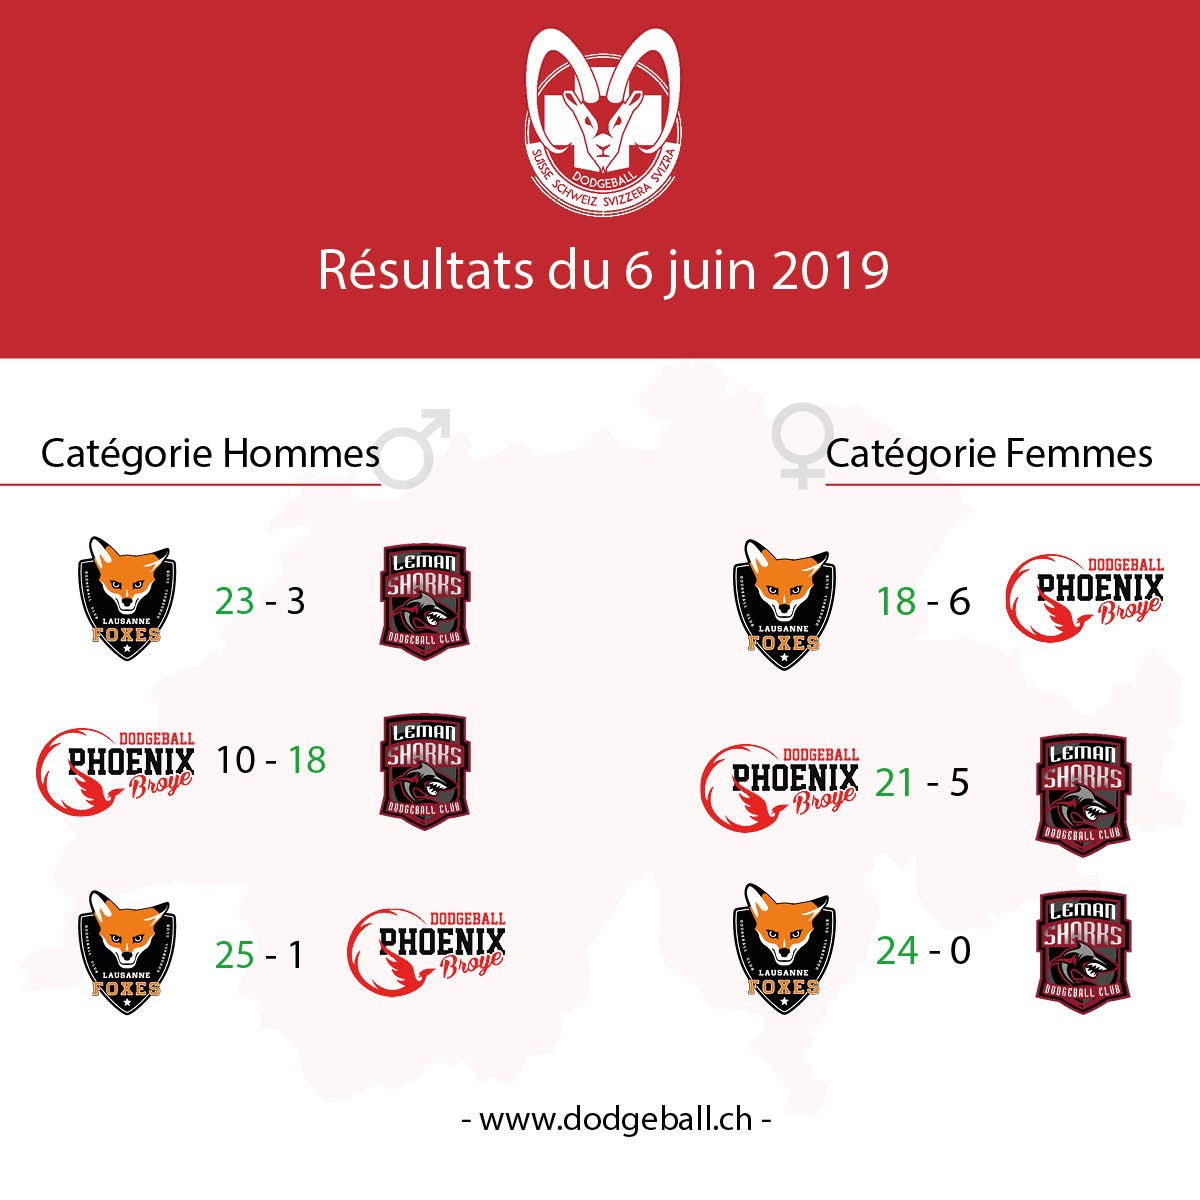 FSD Championnat Suisse Dodgeball Résultats 16 juin 2019